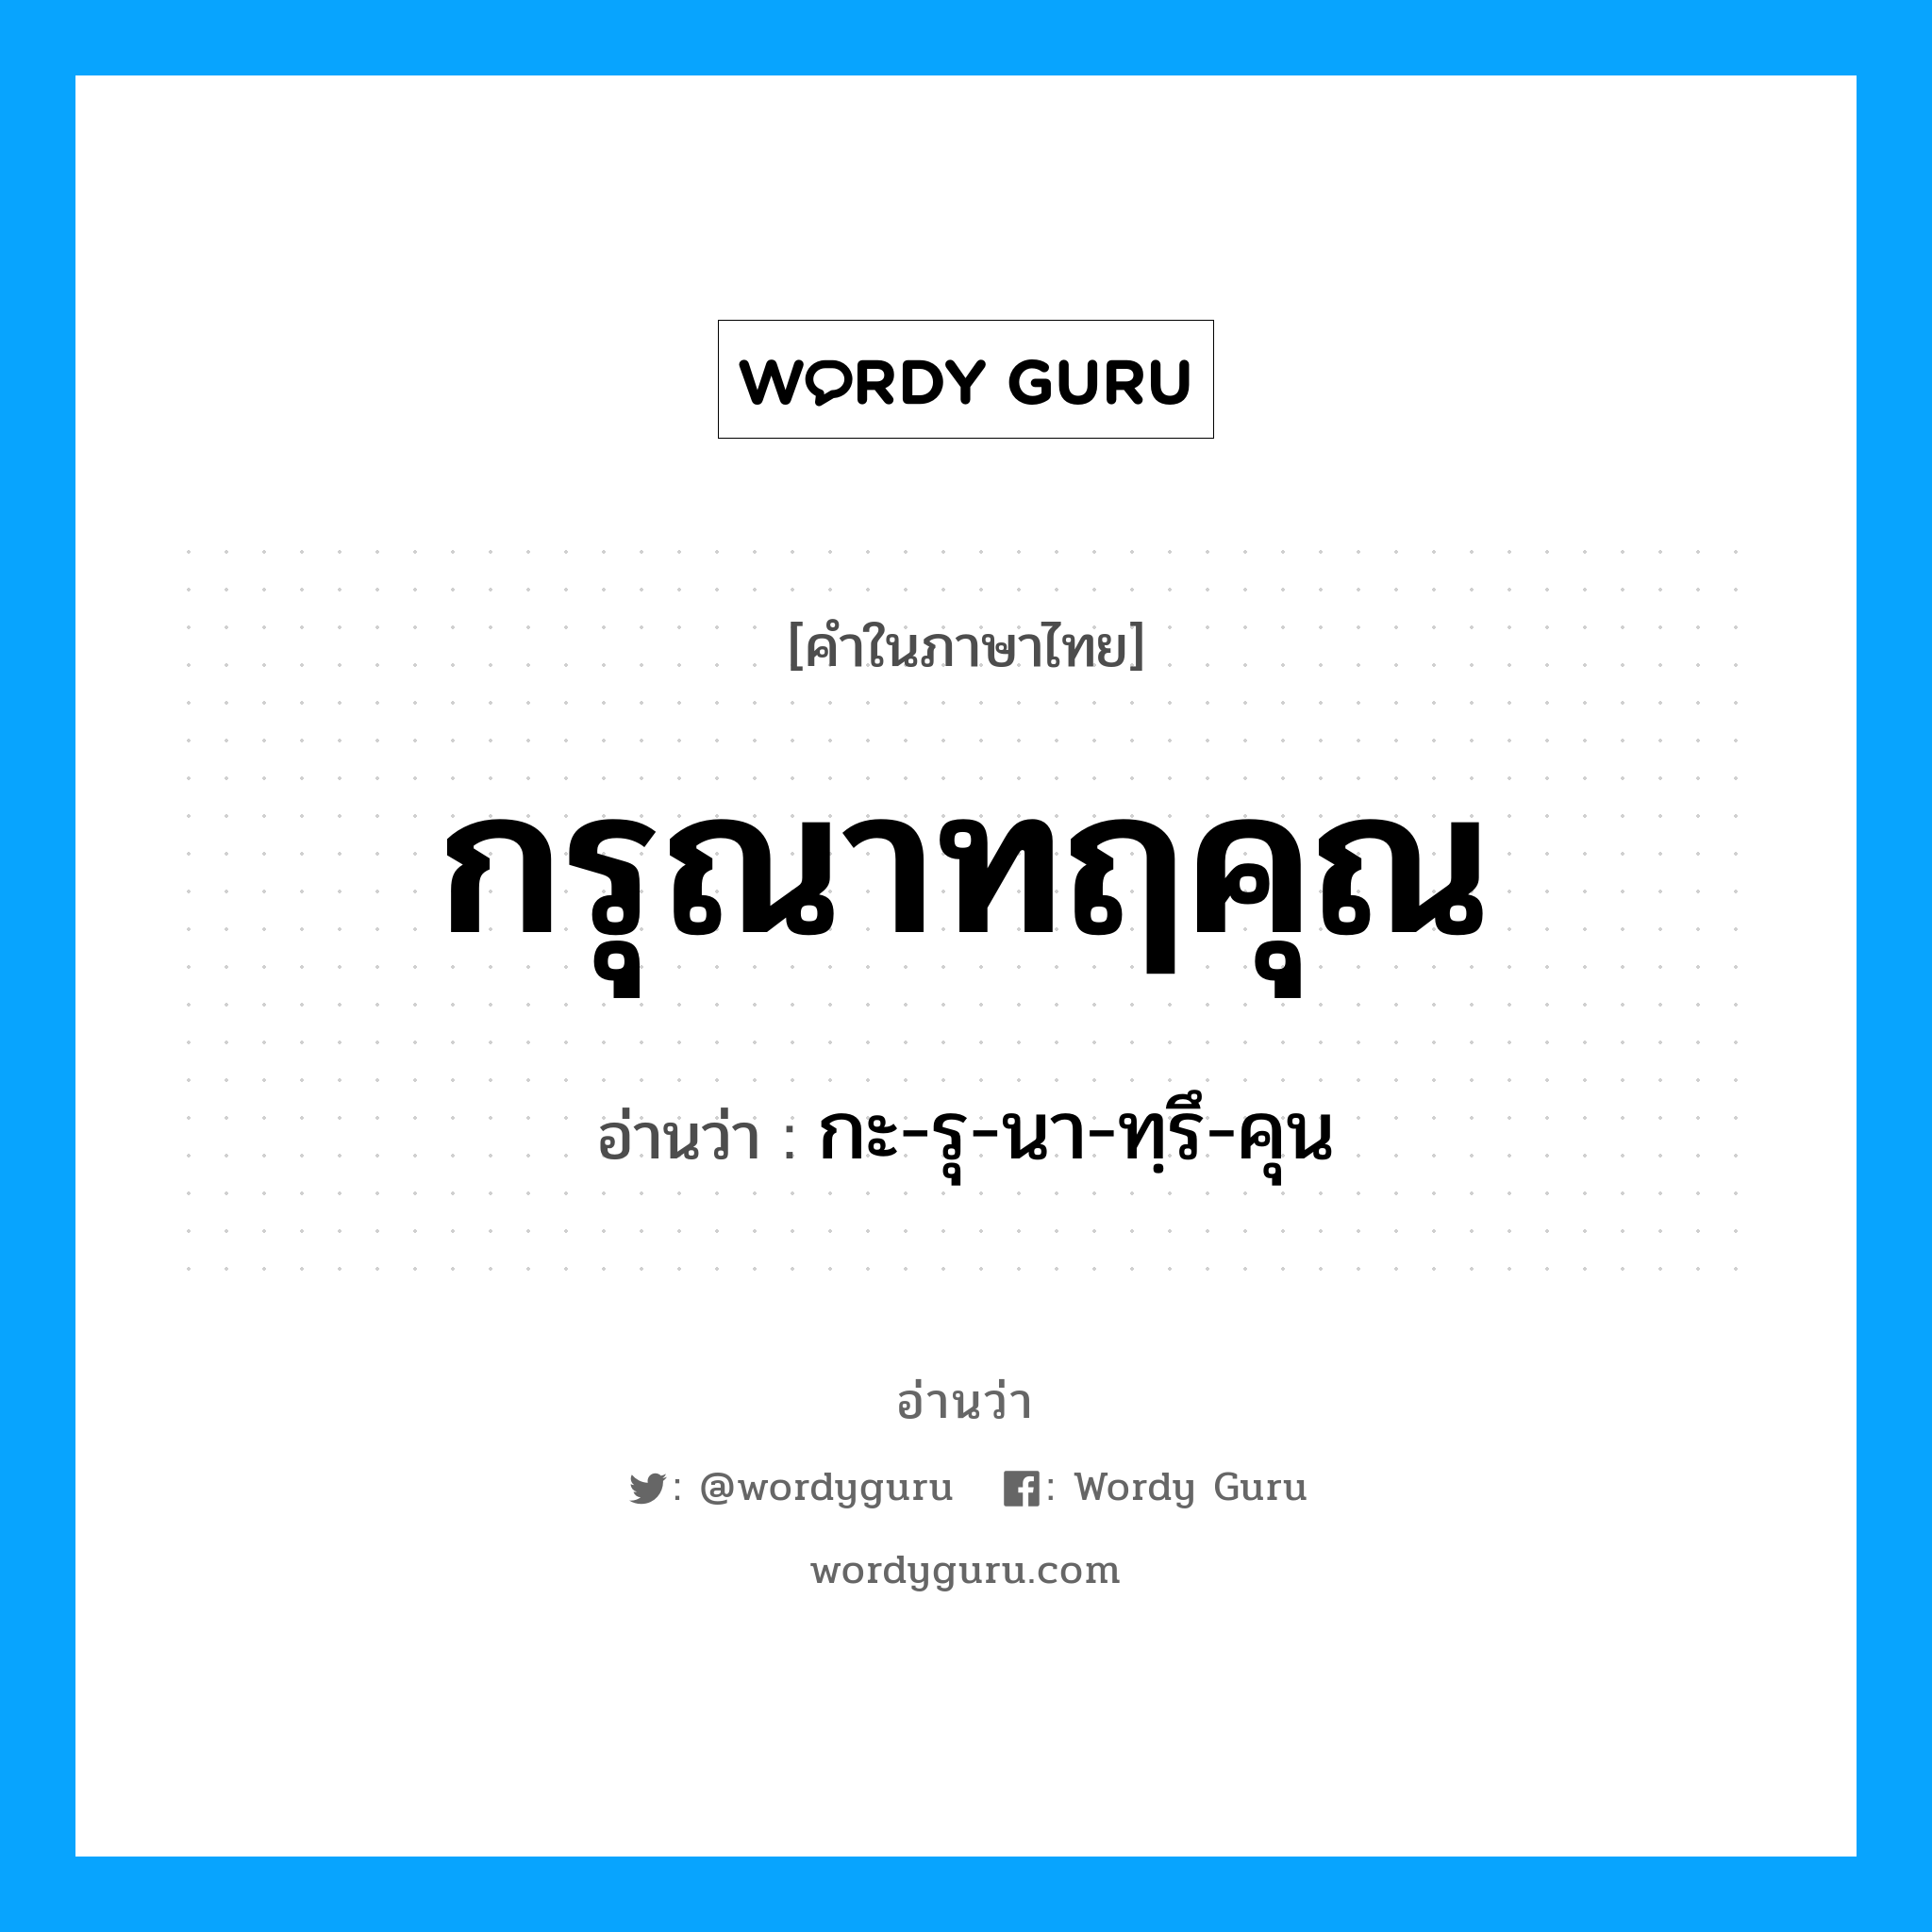 กรุณาทฤคุณ อ่านว่า?, คำในภาษาไทย กรุณาทฤคุณ อ่านว่า กะ-รุ-นา-ทฺรึ-คุน